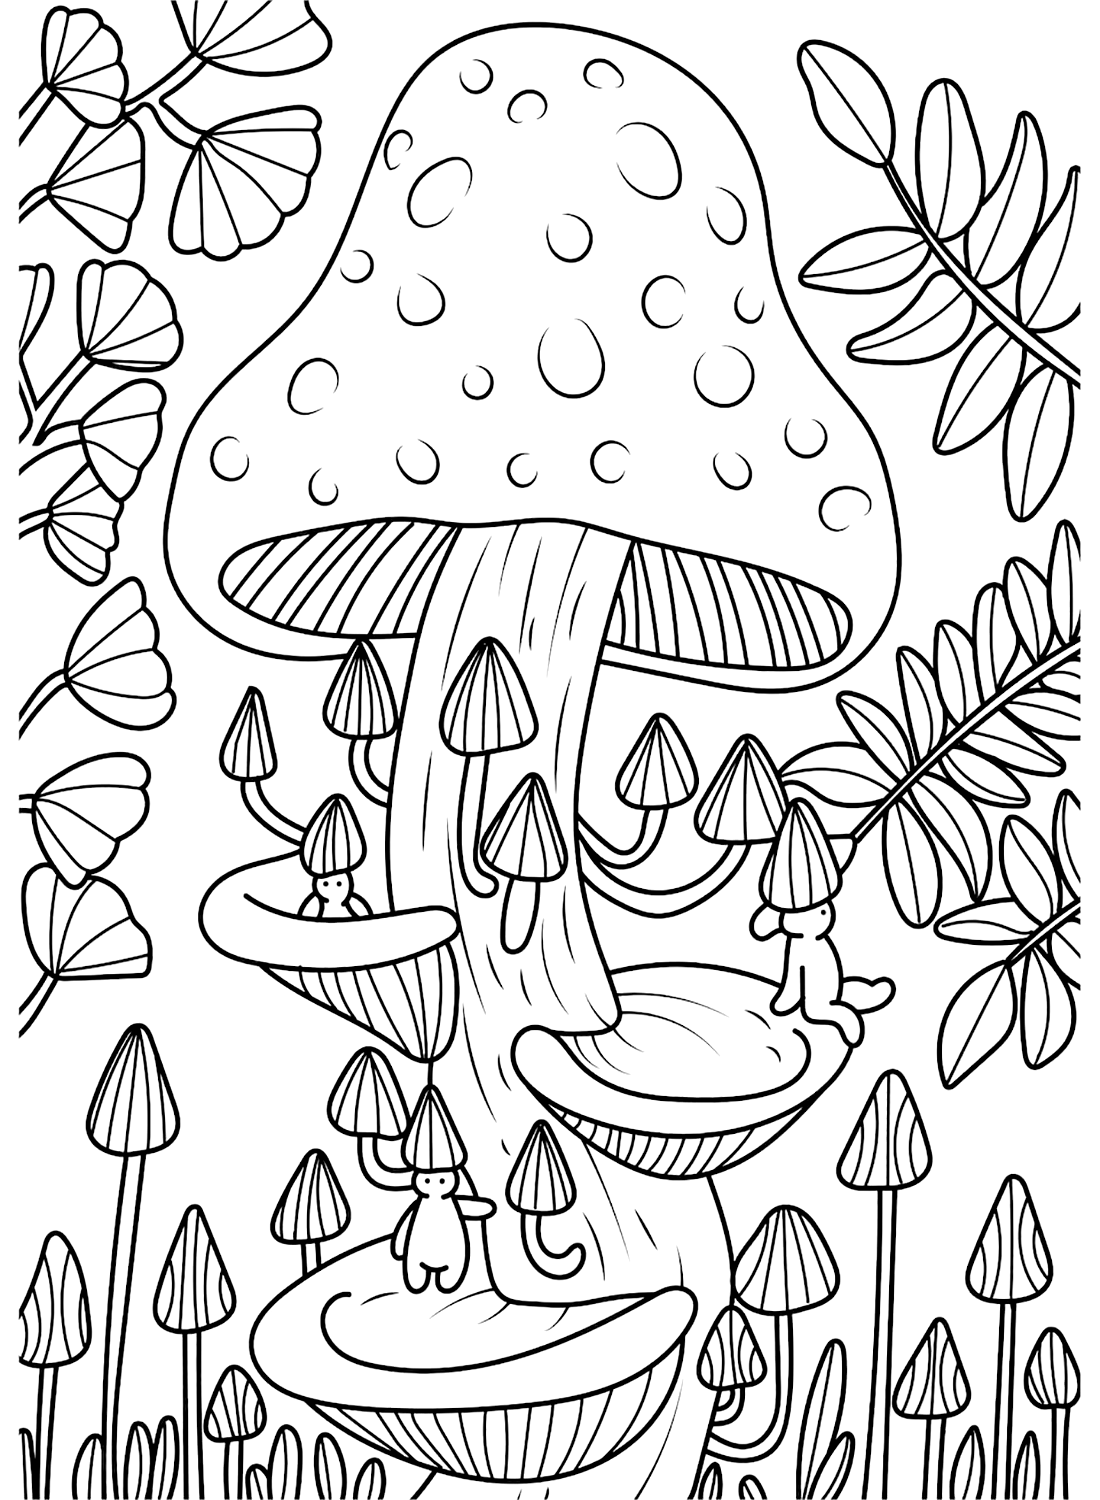 Páginas coloridas de cogumelo de Cogumelo